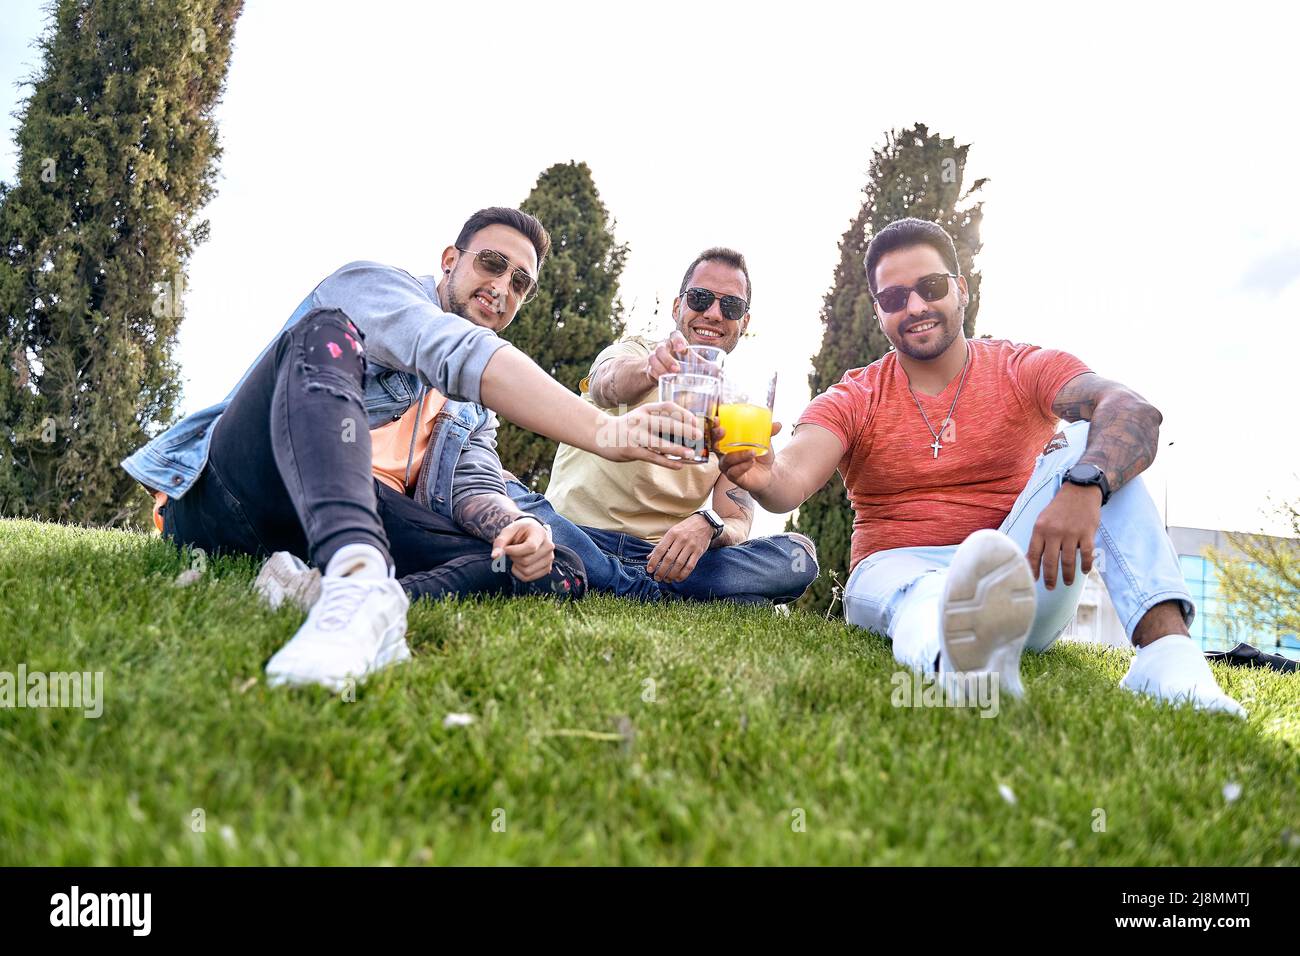 Trois amis assis sur l'herbe, prenant des boissons et de la grillage tout en regardant l'appareil photo un jour ensoleillé. Photo de haute qualité Banque D'Images